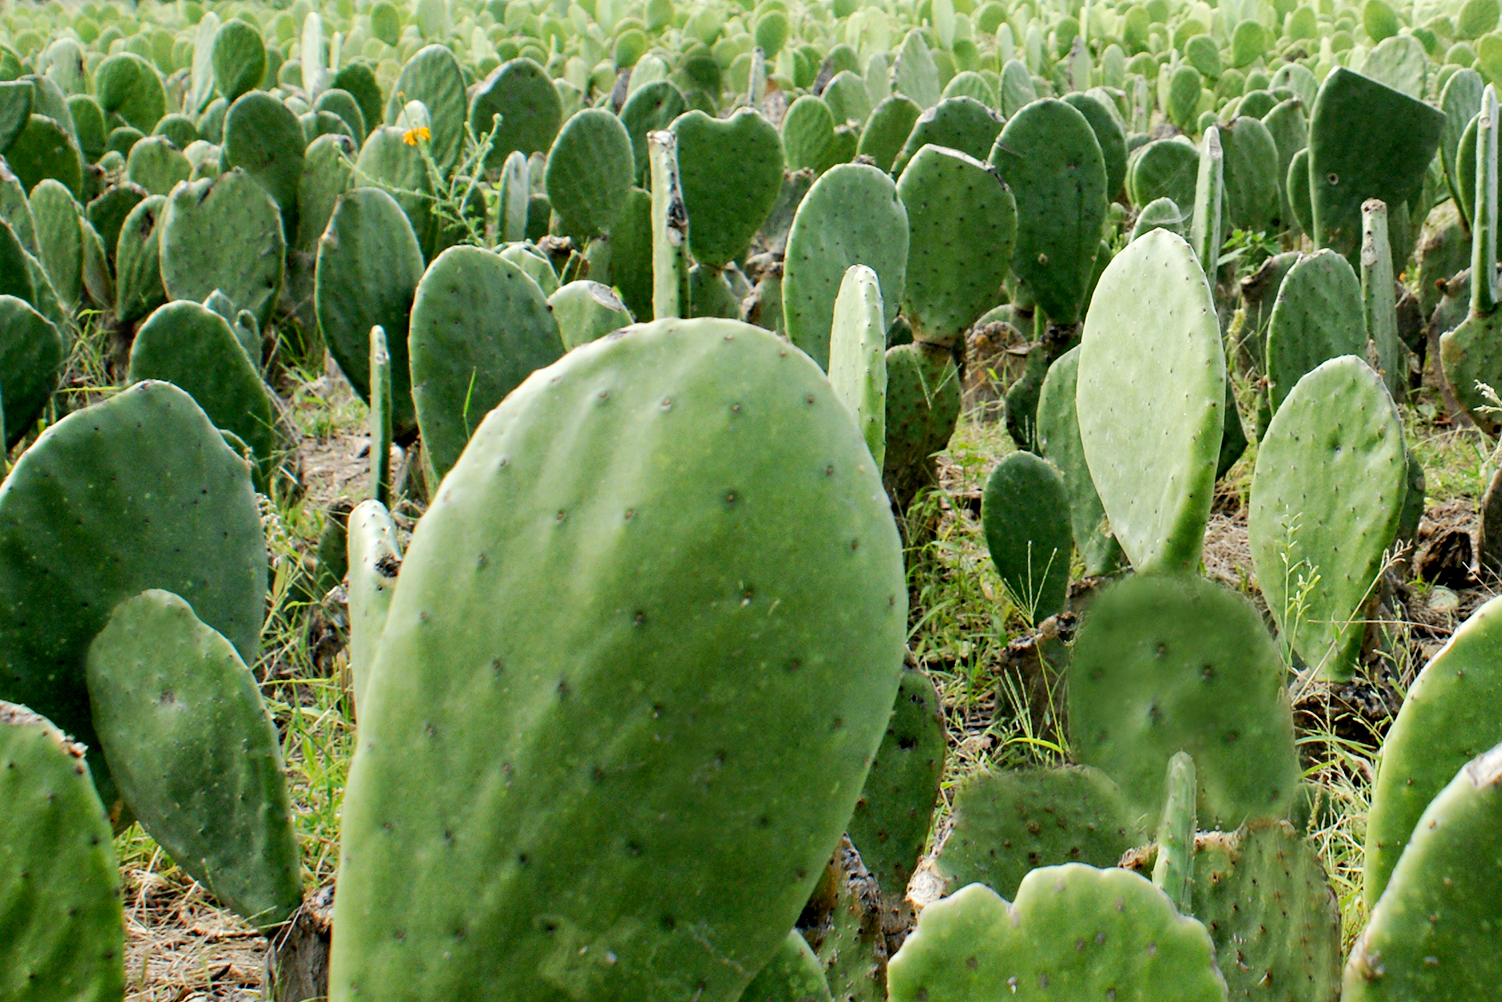 Producción de nopal para darle valor agregado en polvo en el estado de Guanajuato